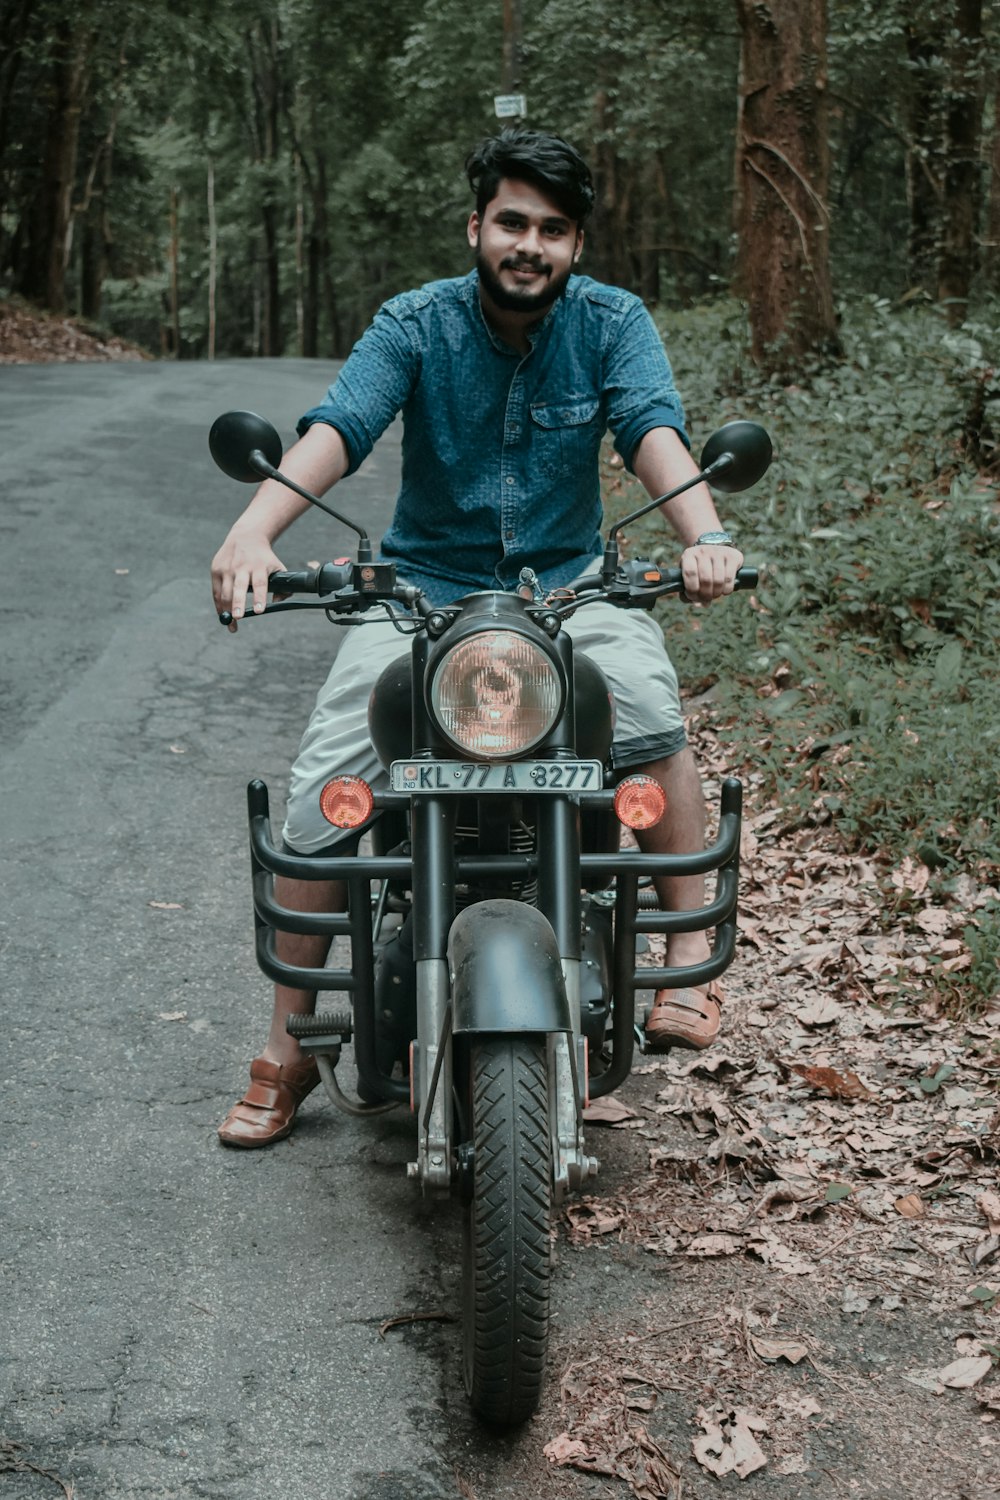 Mann im blauen Hemd fährt schwarzes Motorrad